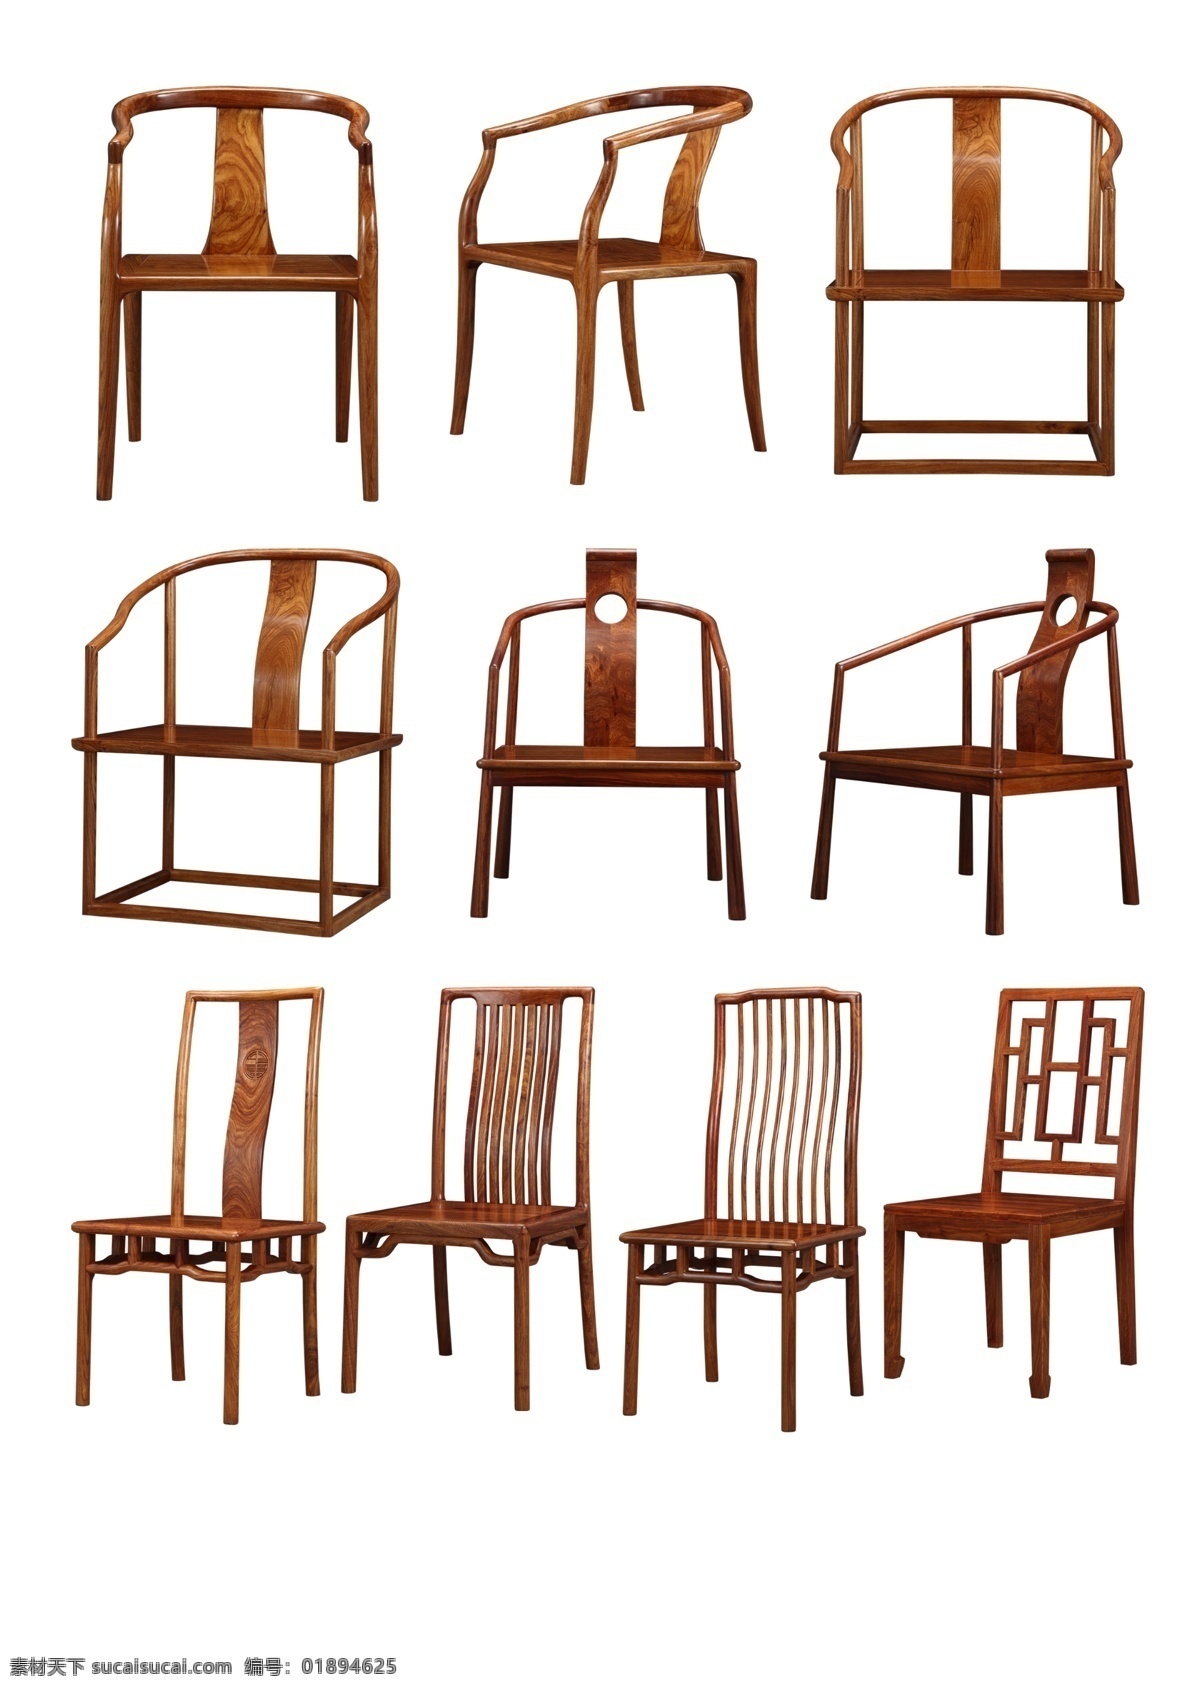 高精 实木家具 分层 图 高清分层 家具 桌椅 凳子 椅子 普通共享